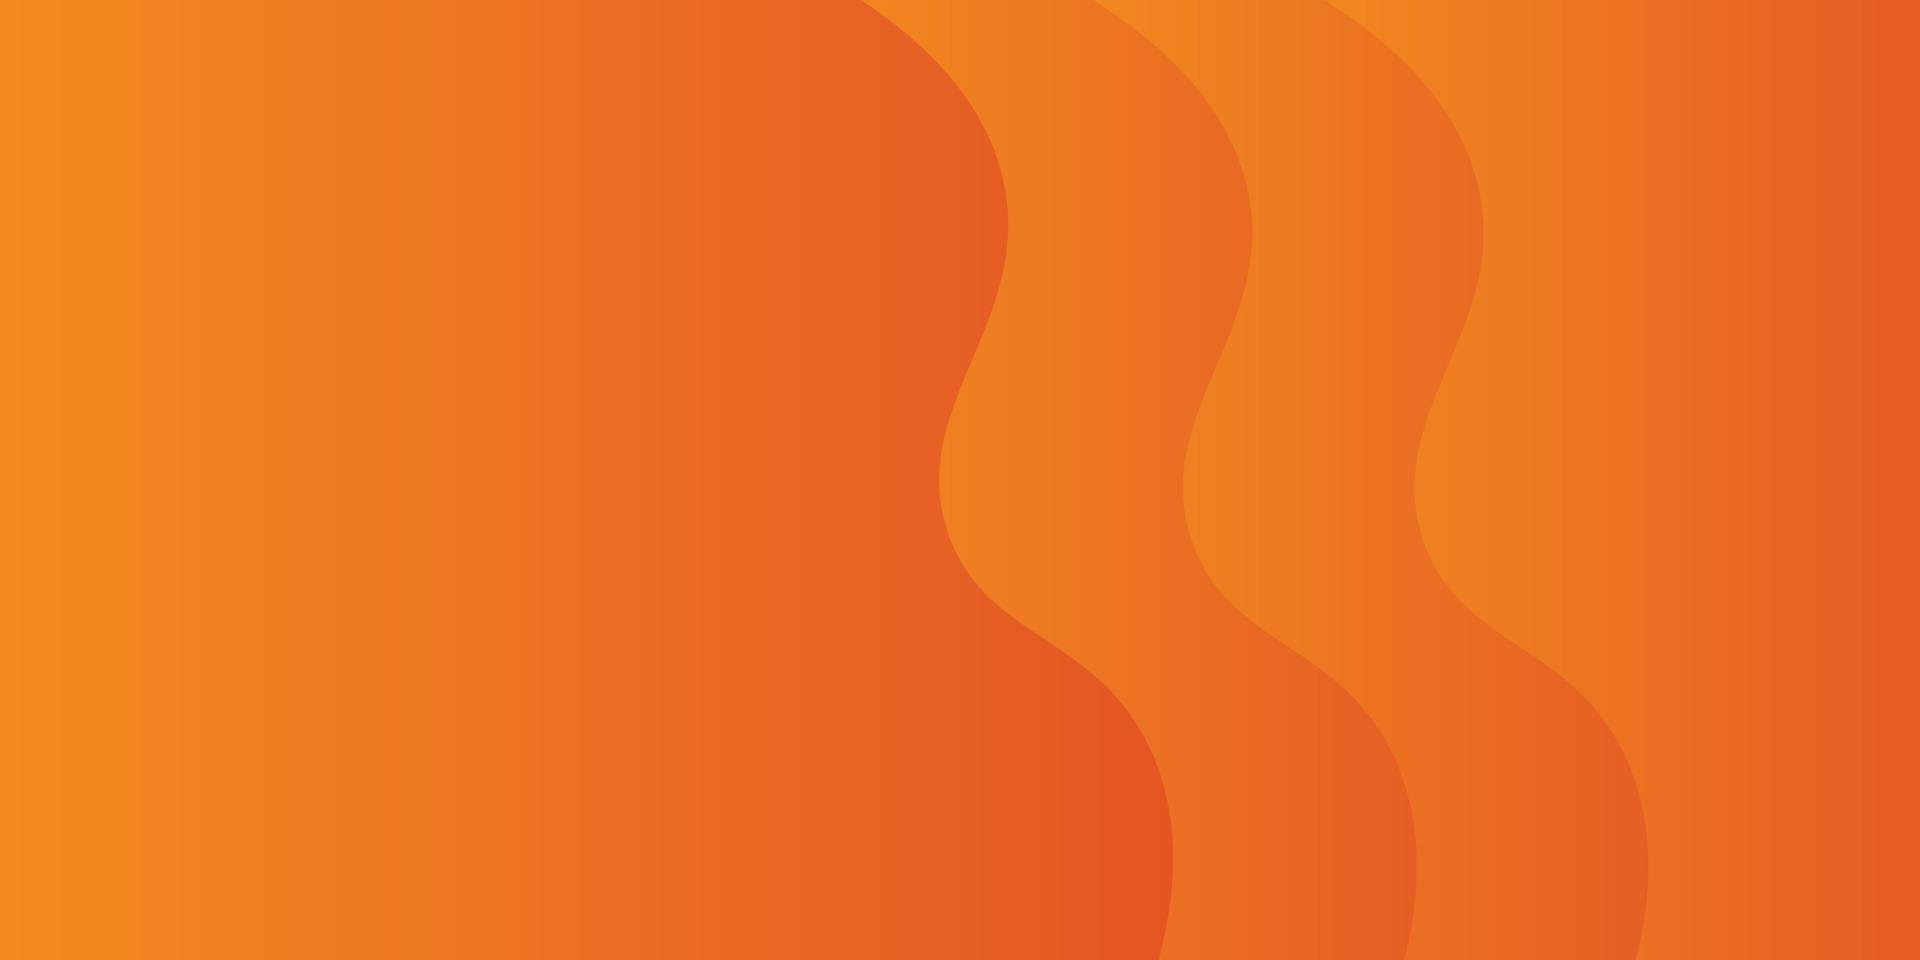 orange bakgrundspapper skuren abstrakt bakgrund för presentationsdesign, orange abstrakt användning för företag, företag, institution, affisch, mall, fest, festlig, seminarium, eps10 vektor, illustration vektor